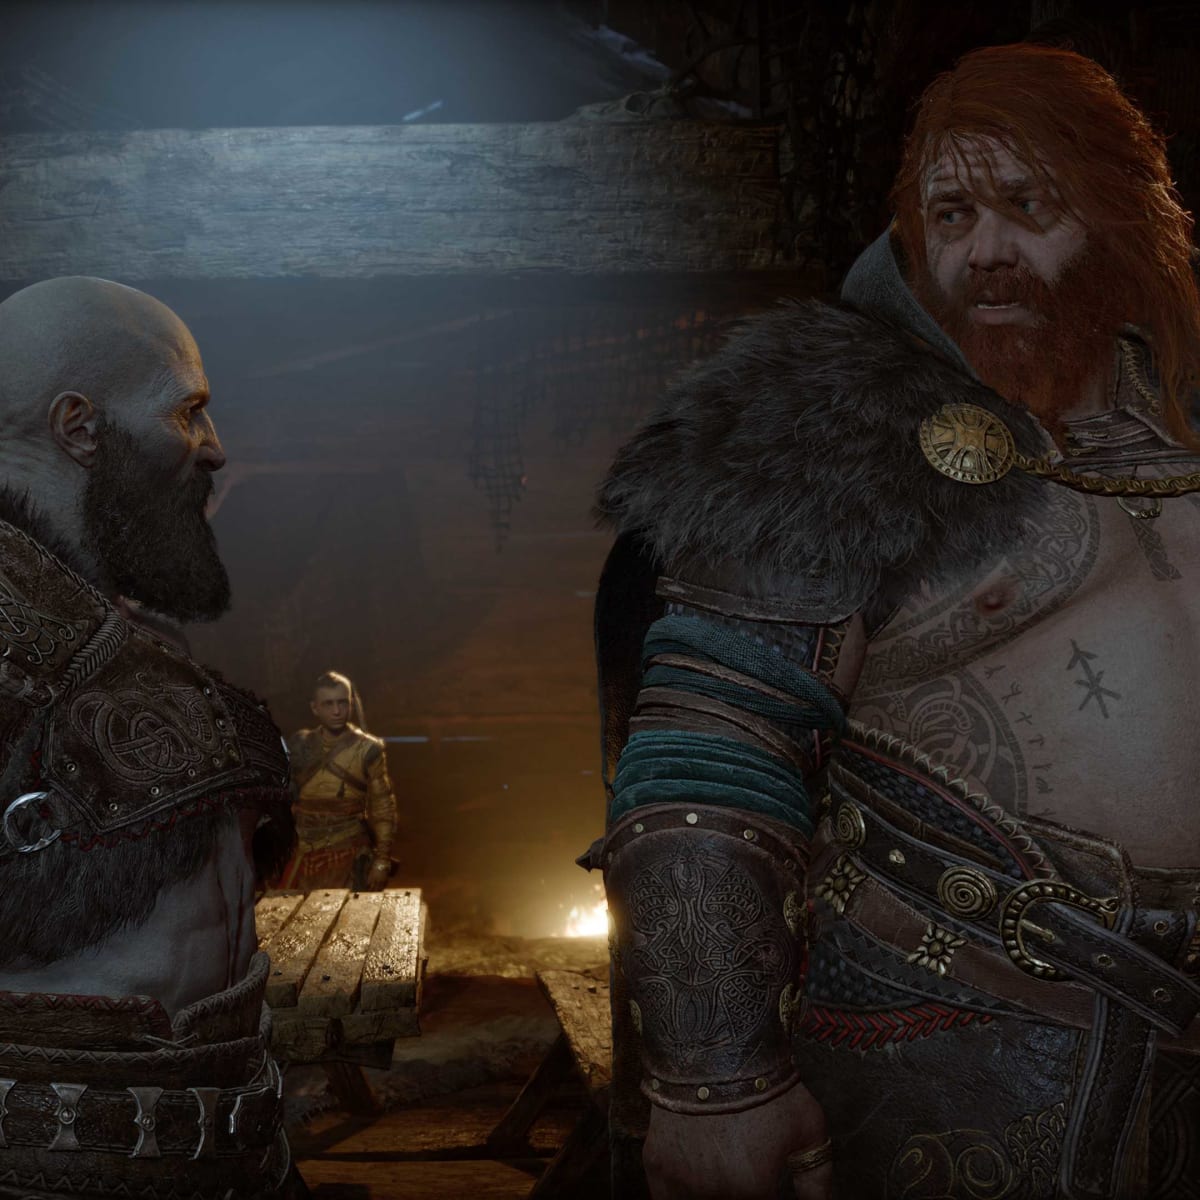 God of War Ragnarök writers considered killing Kratos in opening